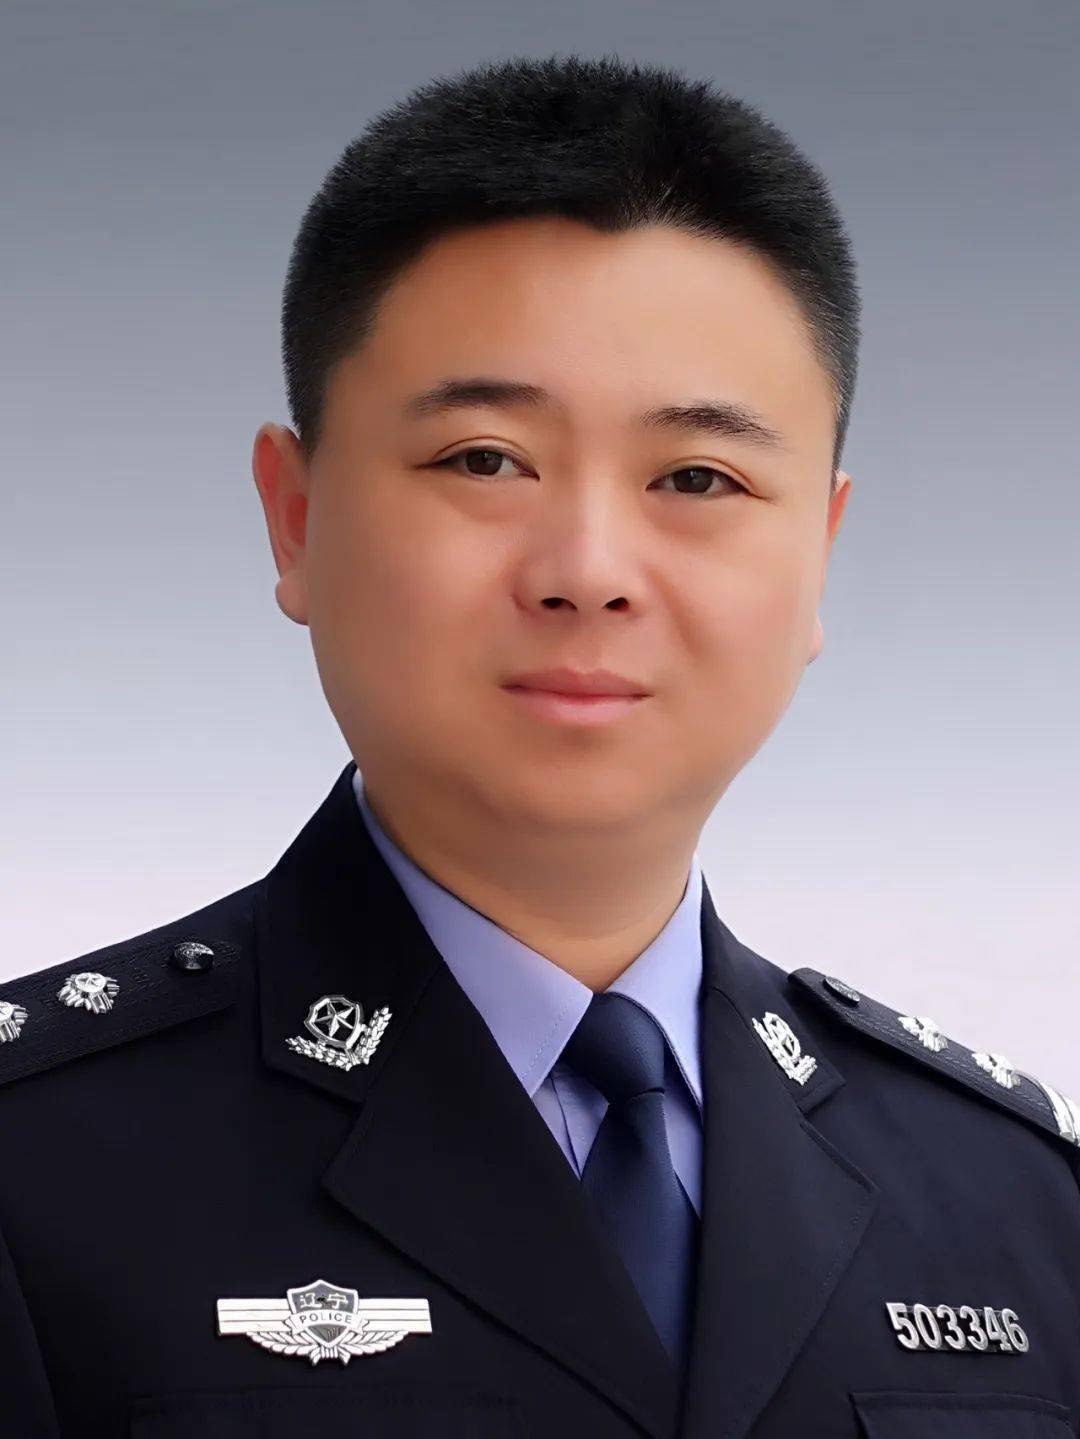 本溪市公安局溪钢分局一级警长,中国法学会会员,公安机关高级执法资格